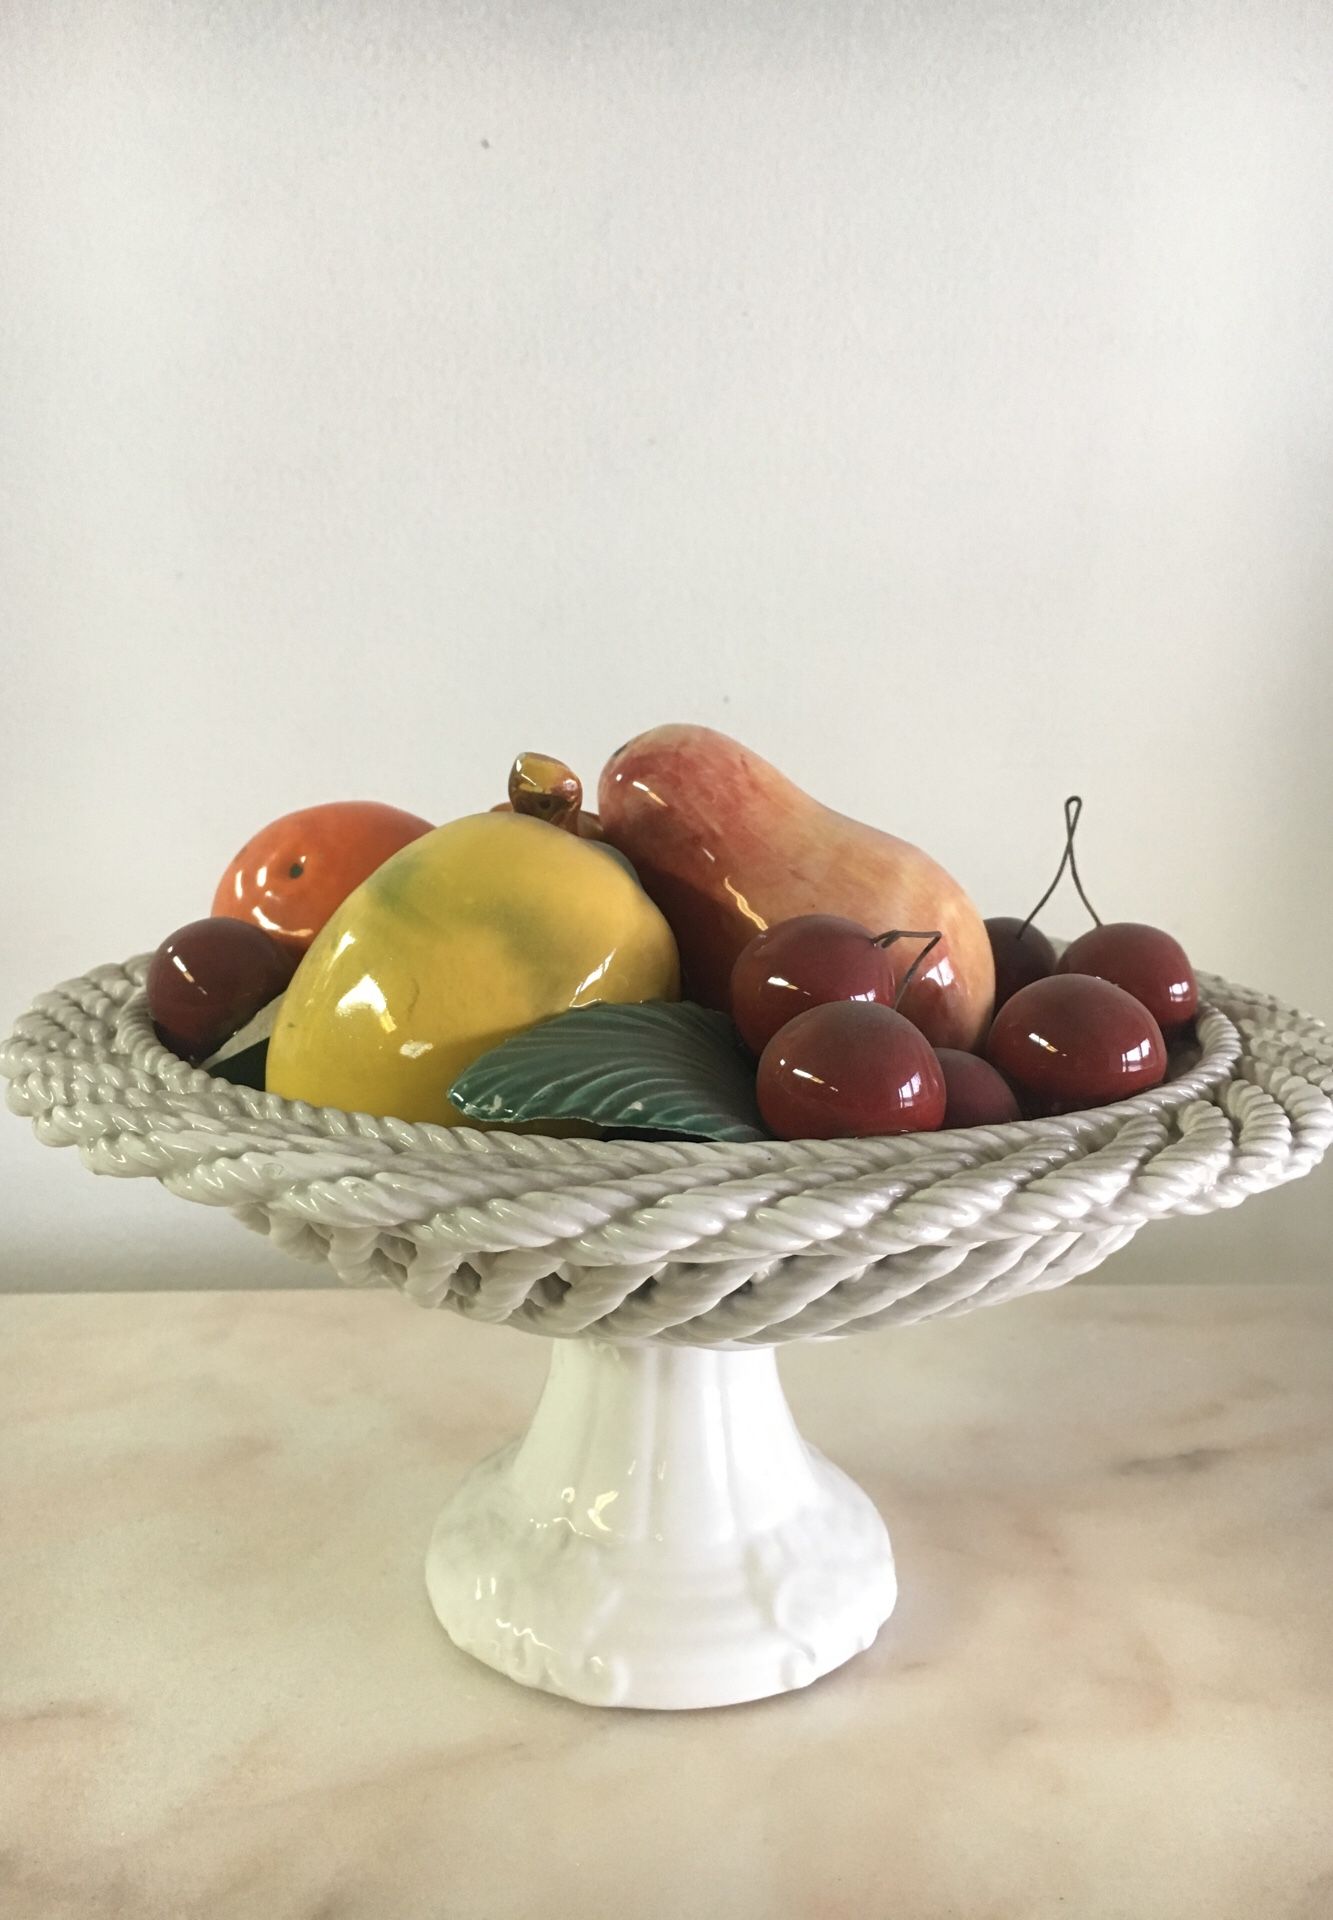 Italian ceramic fruit stand